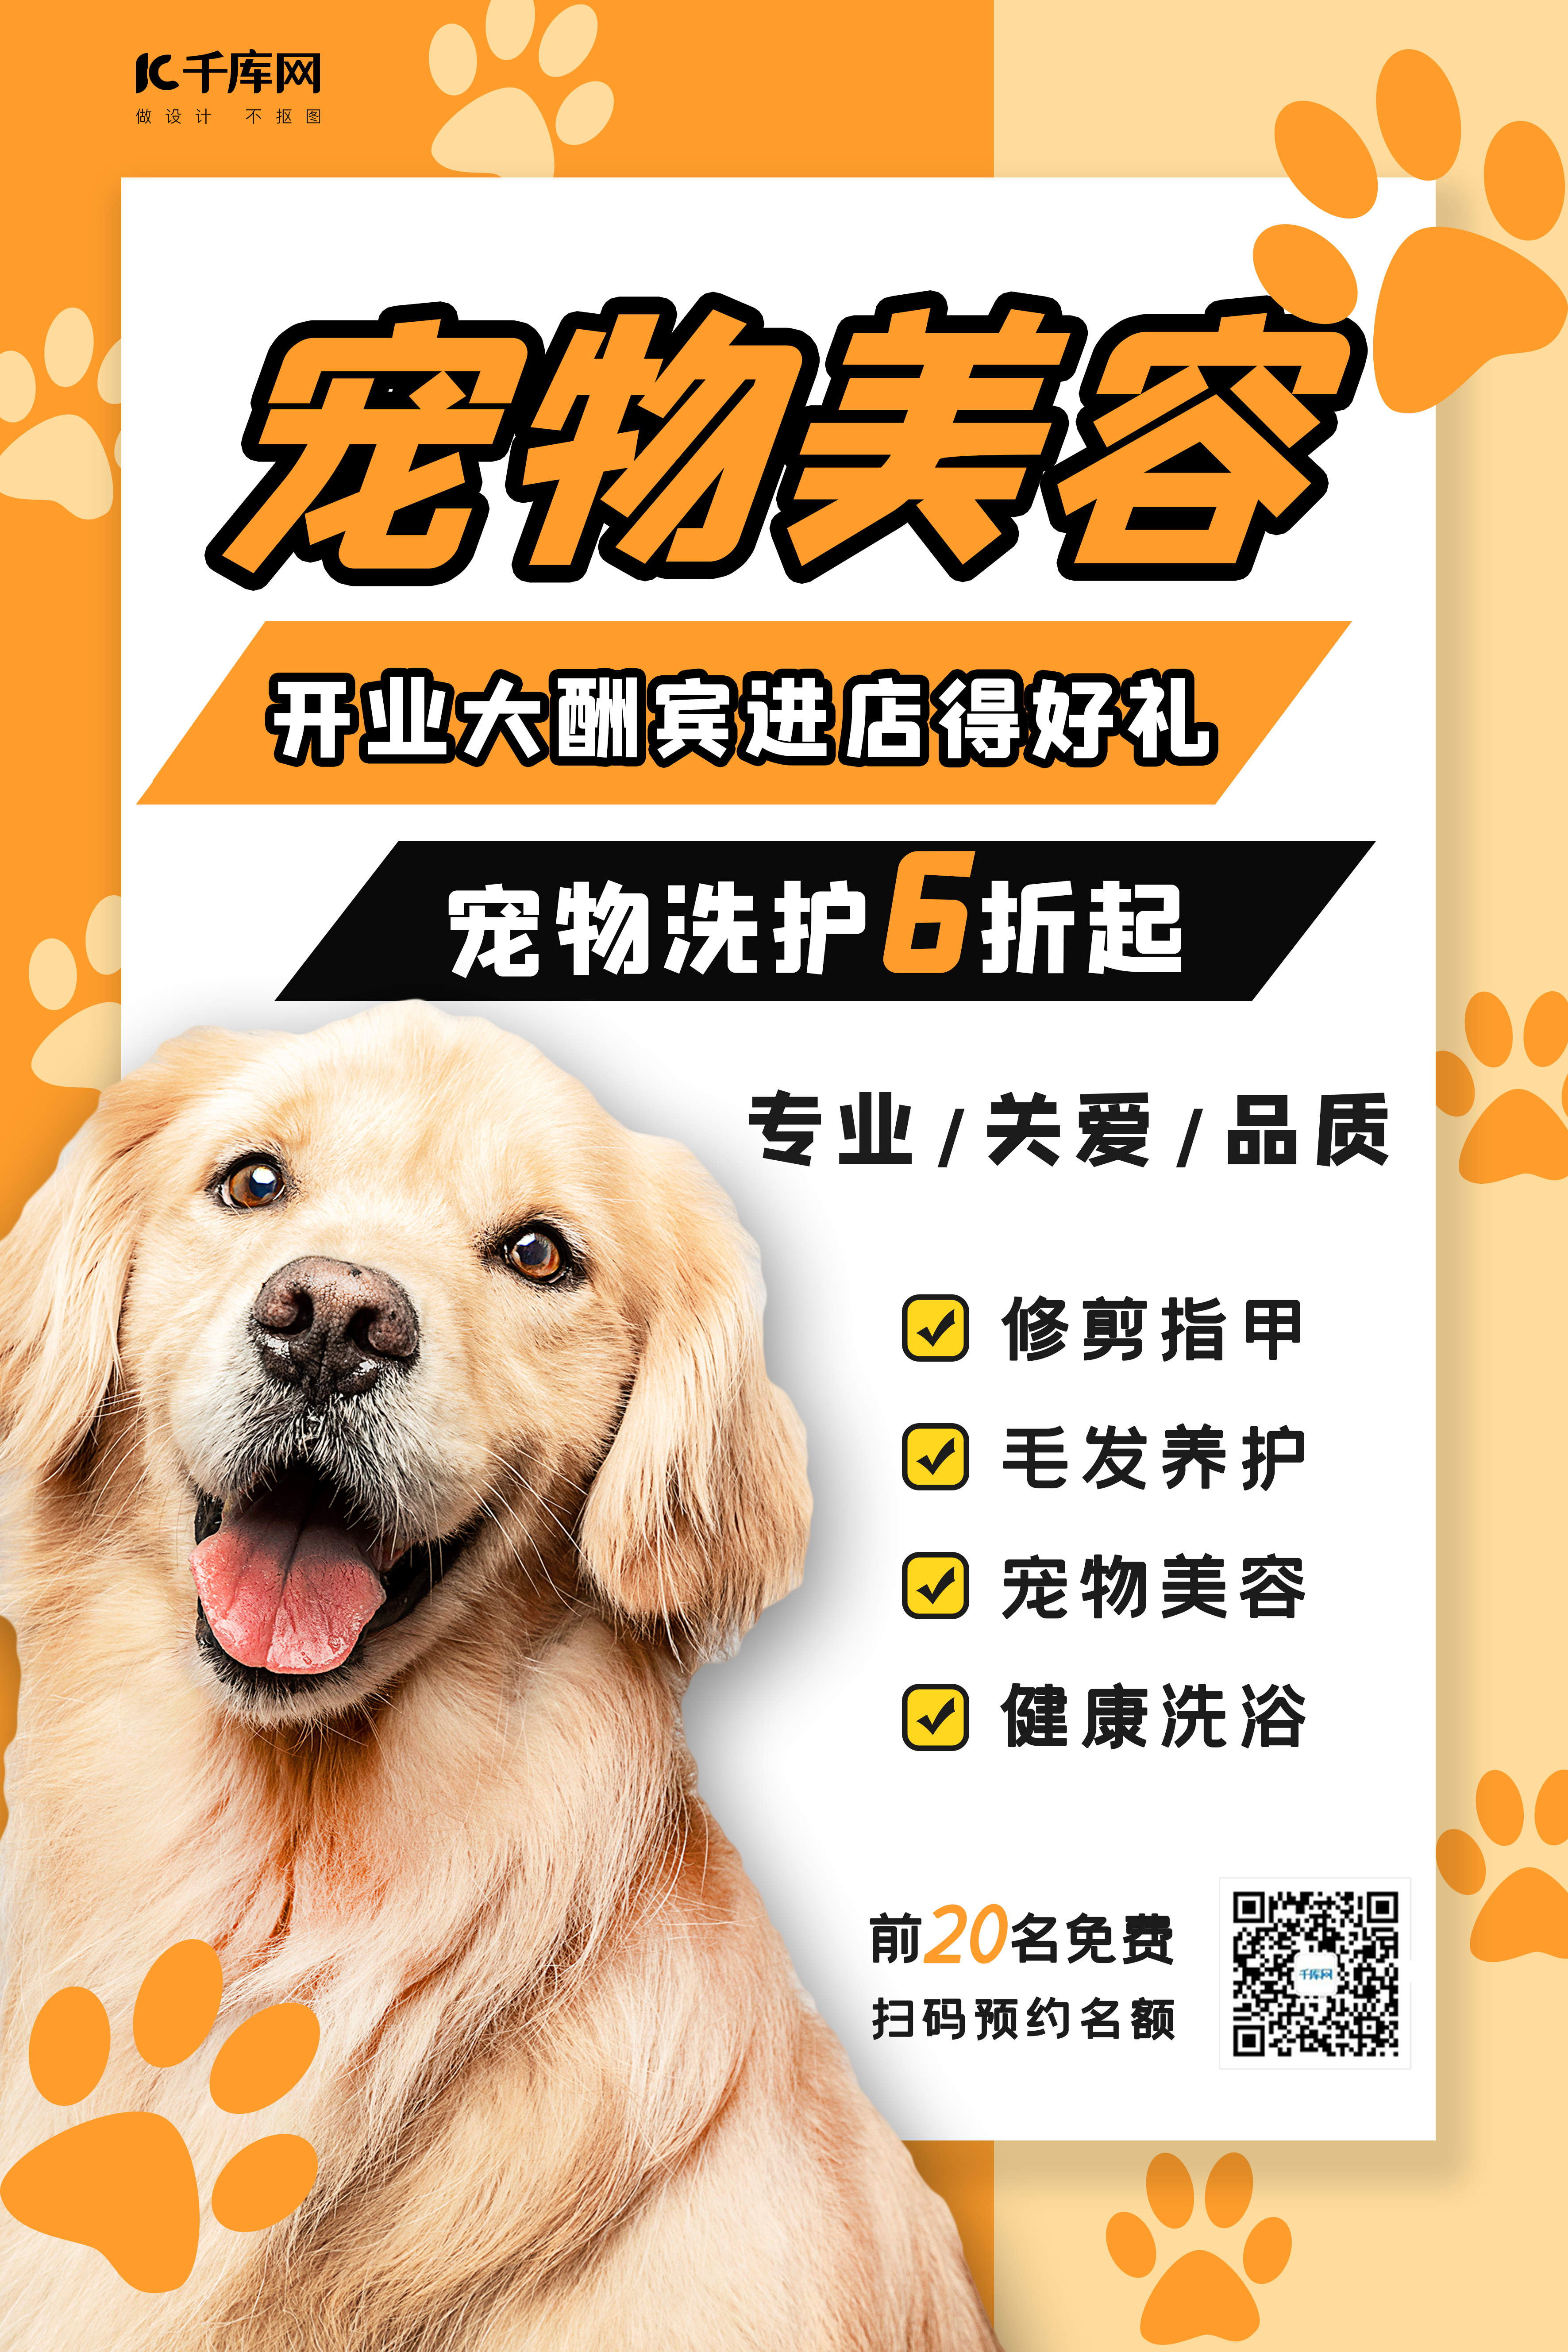 宠物美容狗狗黄黑简约海报图片